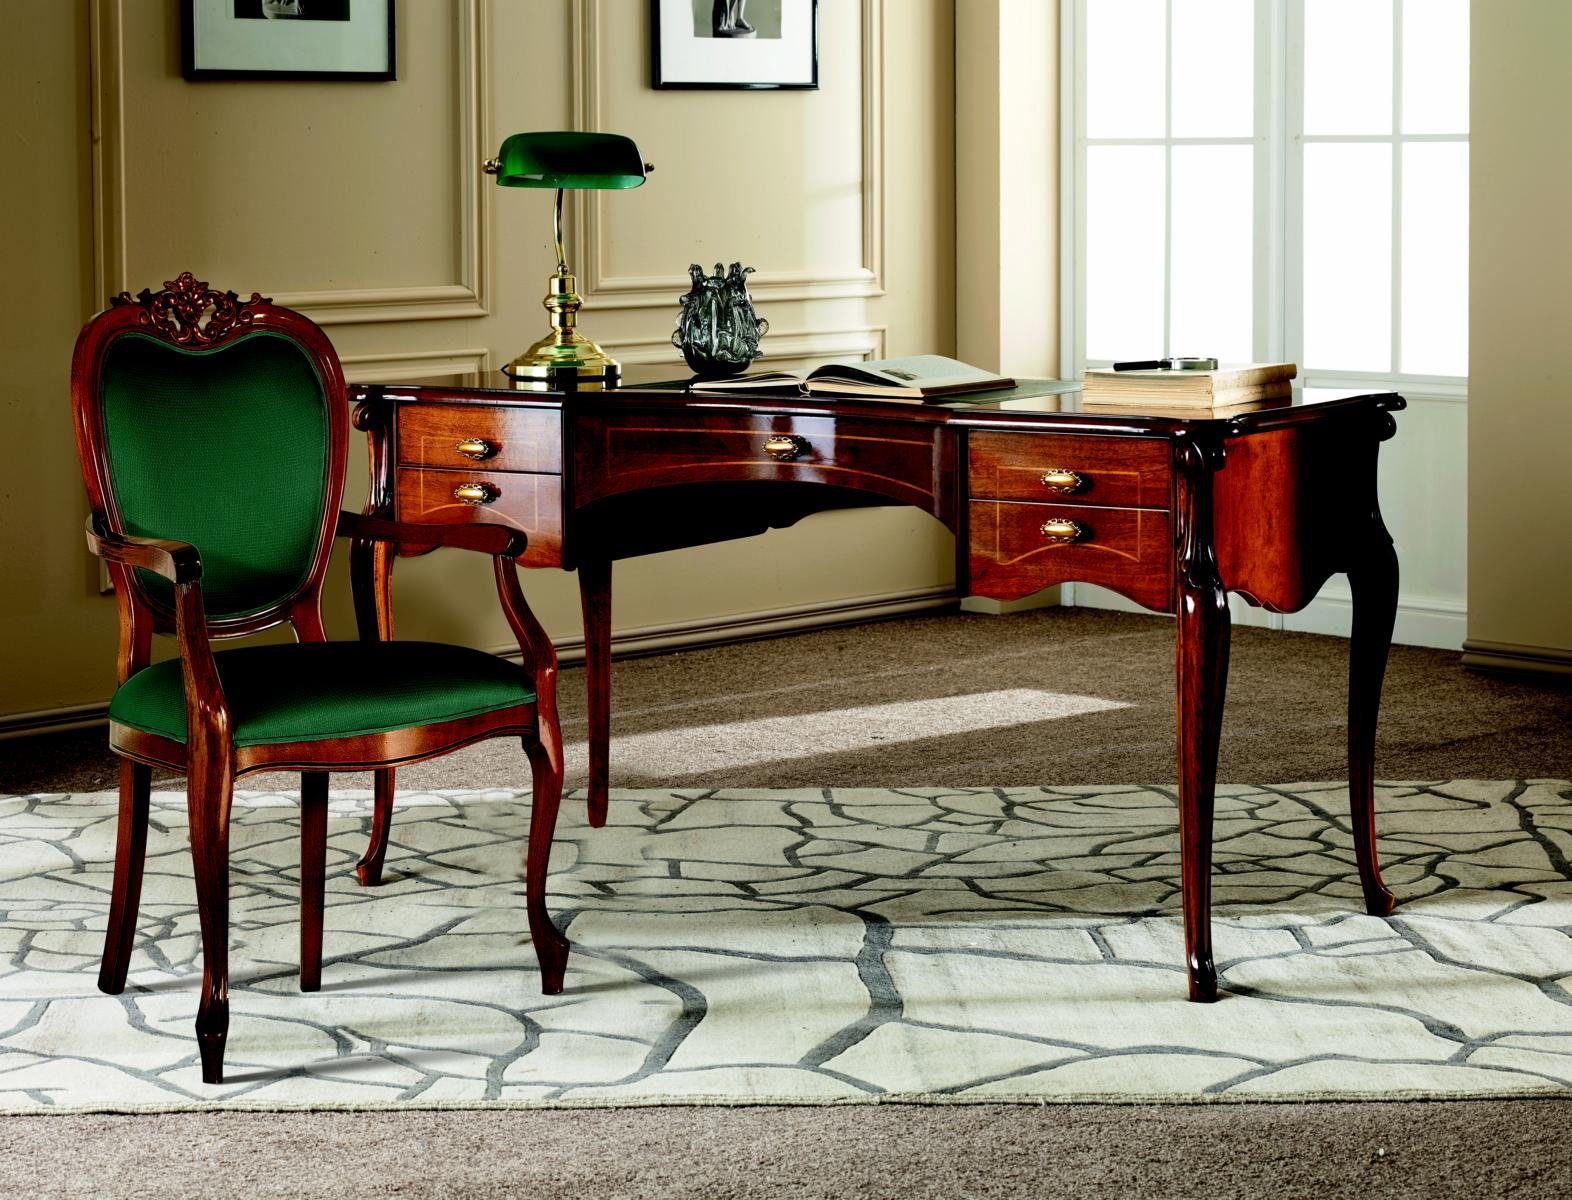 JVmoebel Schreibtisch Italienische Klassisches Holz Luxus Büromöbel Schreibtisch Möbel Barock Stil